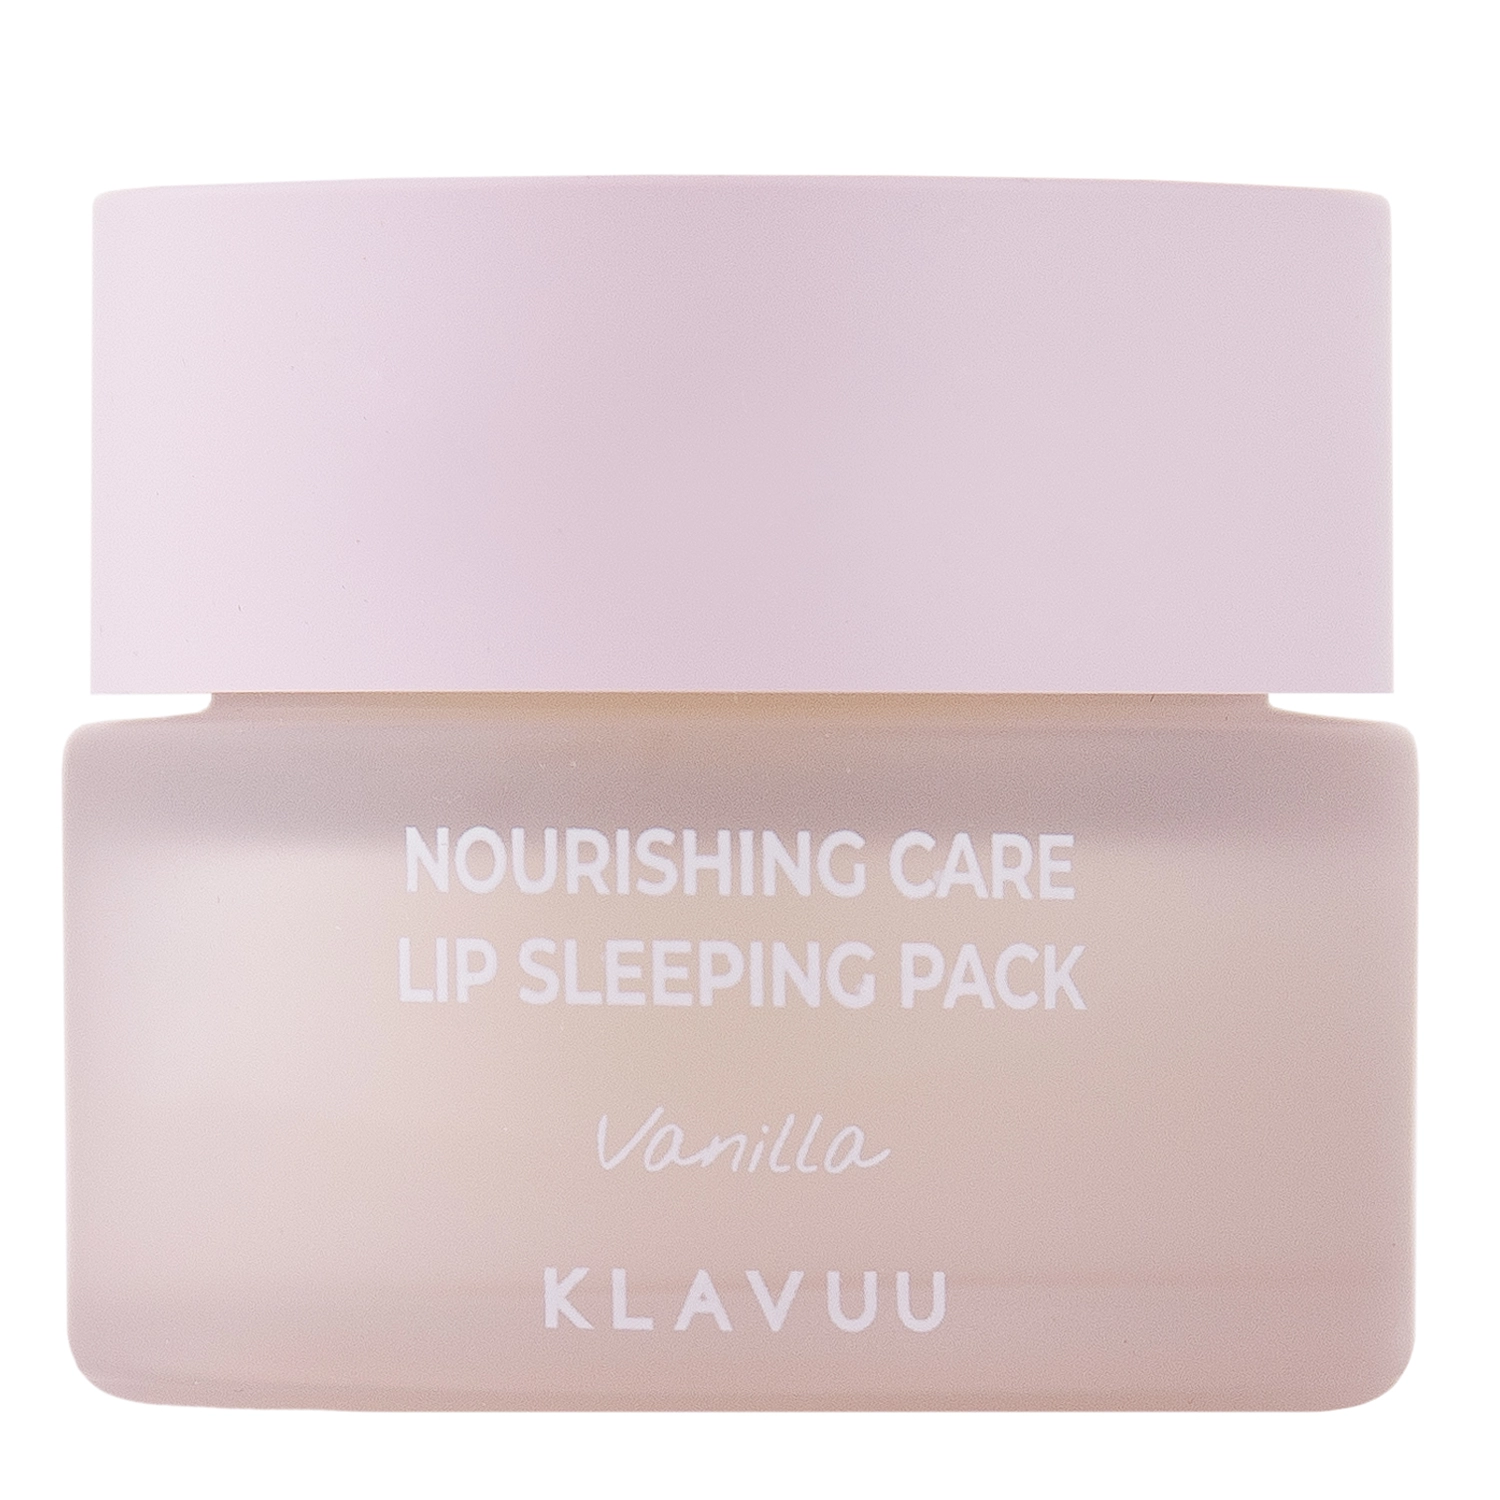 Klavuu - Nourishing Care Lip Sleeping Pack - Mască de noapte hrănitoare pentru buze - Vanilie - 20g 